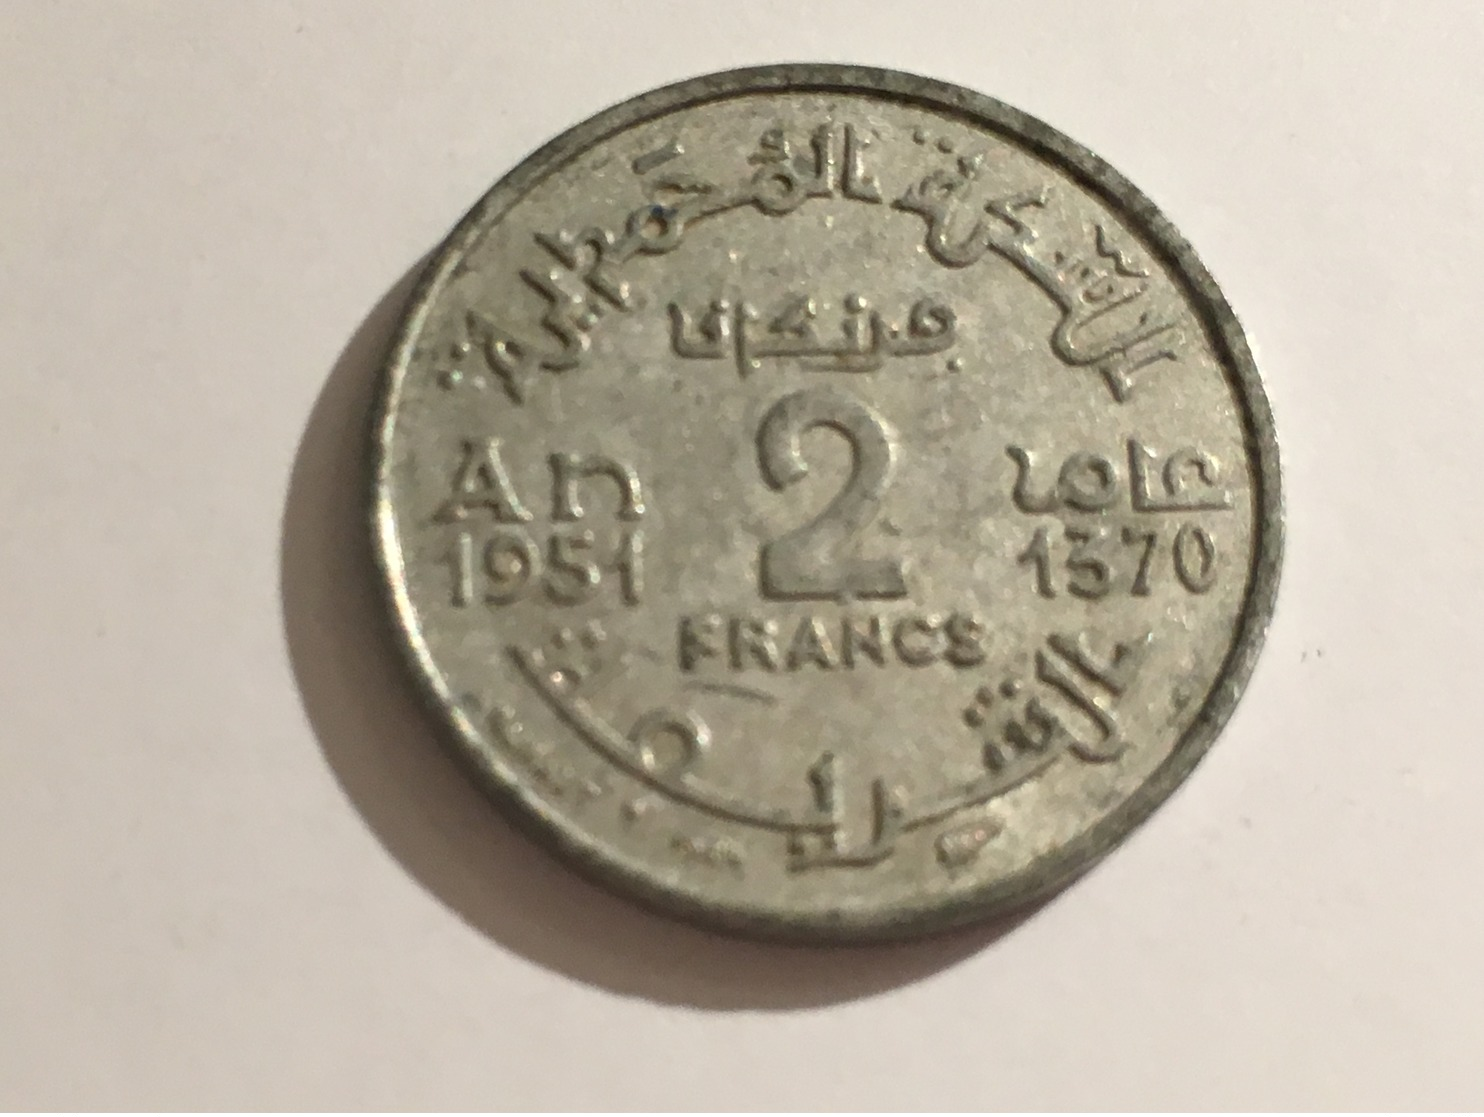 273/ MAROC 1951 2 FRANCS - Marruecos